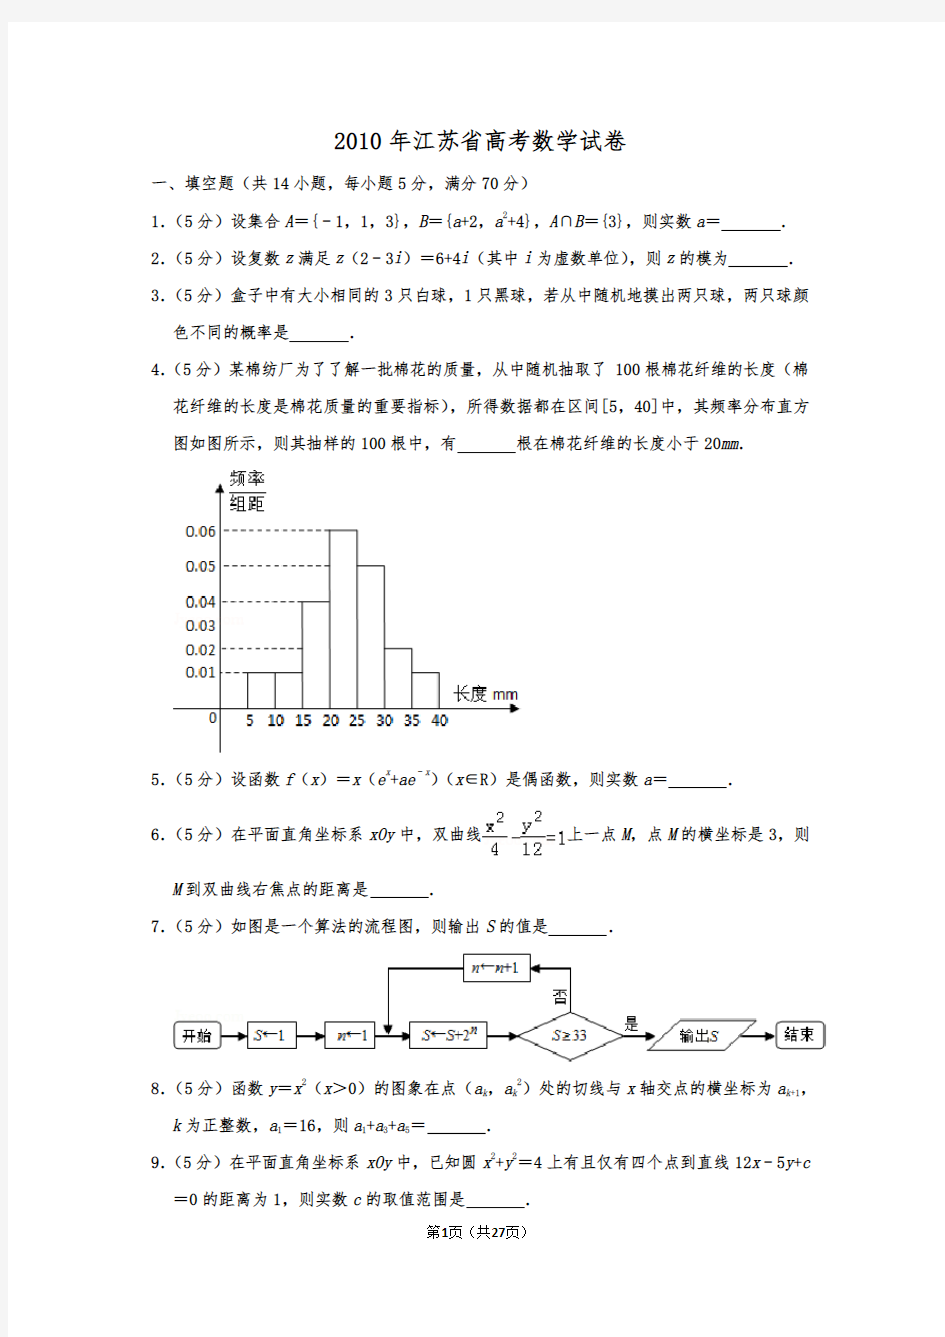 葛军老师参与出题2010年江苏省高考数学试卷